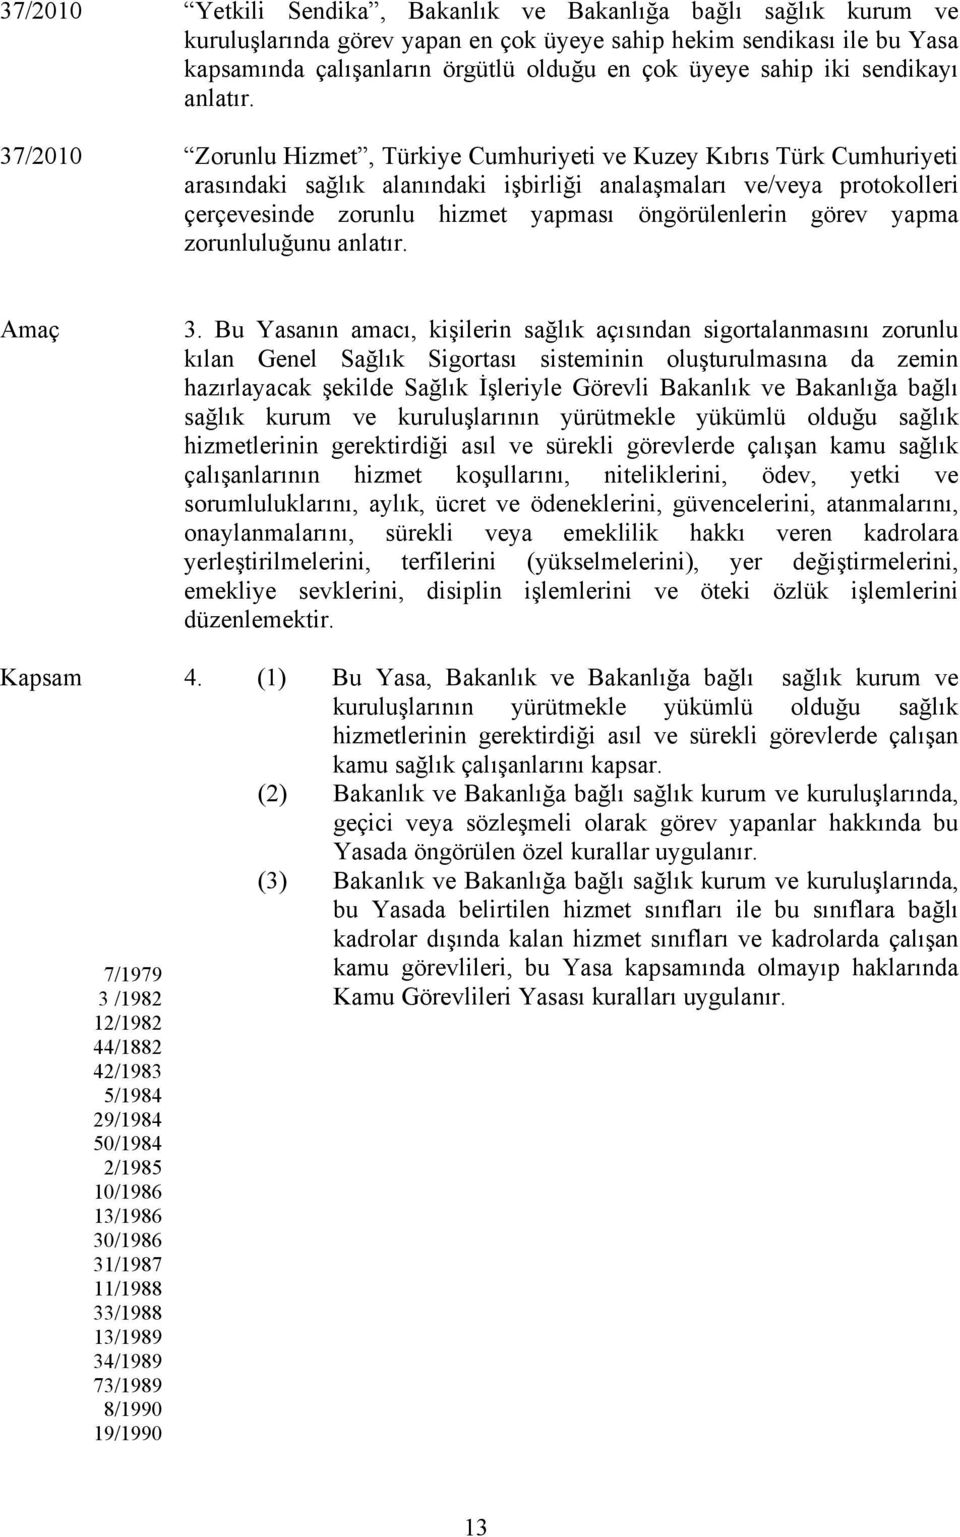 37/2010 Zorunlu Hizmet, Türkiye Cumhuriyeti ve Kuzey Kıbrıs Türk Cumhuriyeti arasındaki sağlık alanındaki işbirliği analaşmaları ve/veya protokolleri çerçevesinde zorunlu hizmet yapması